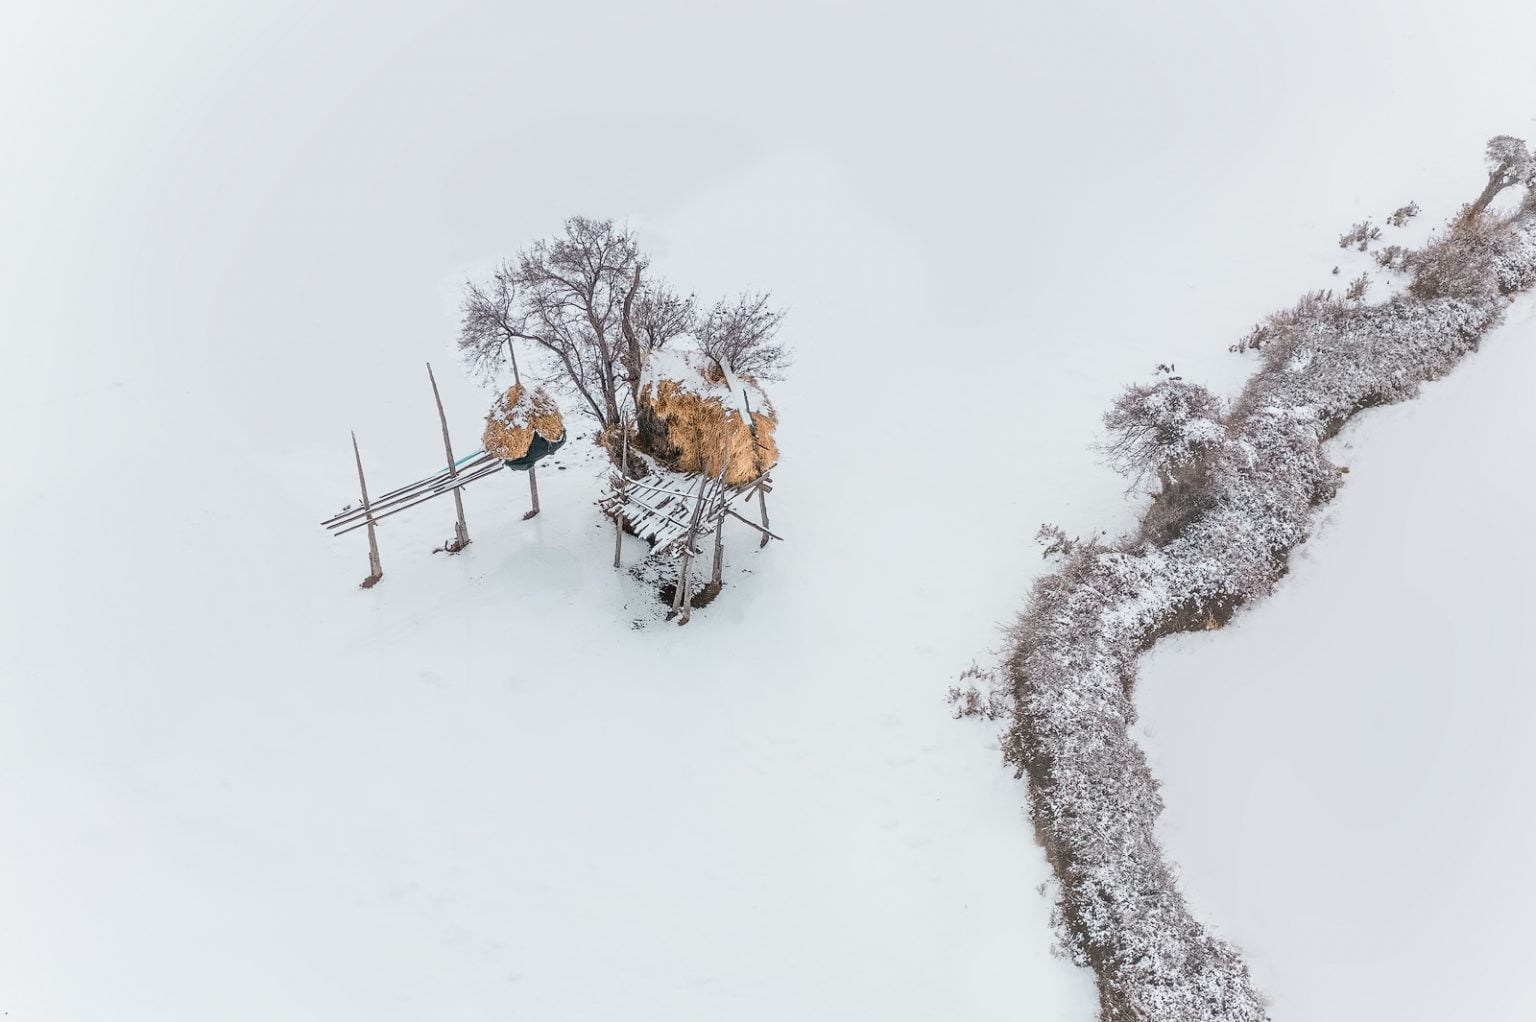 zima z drona - ekspozycja DJI Academy